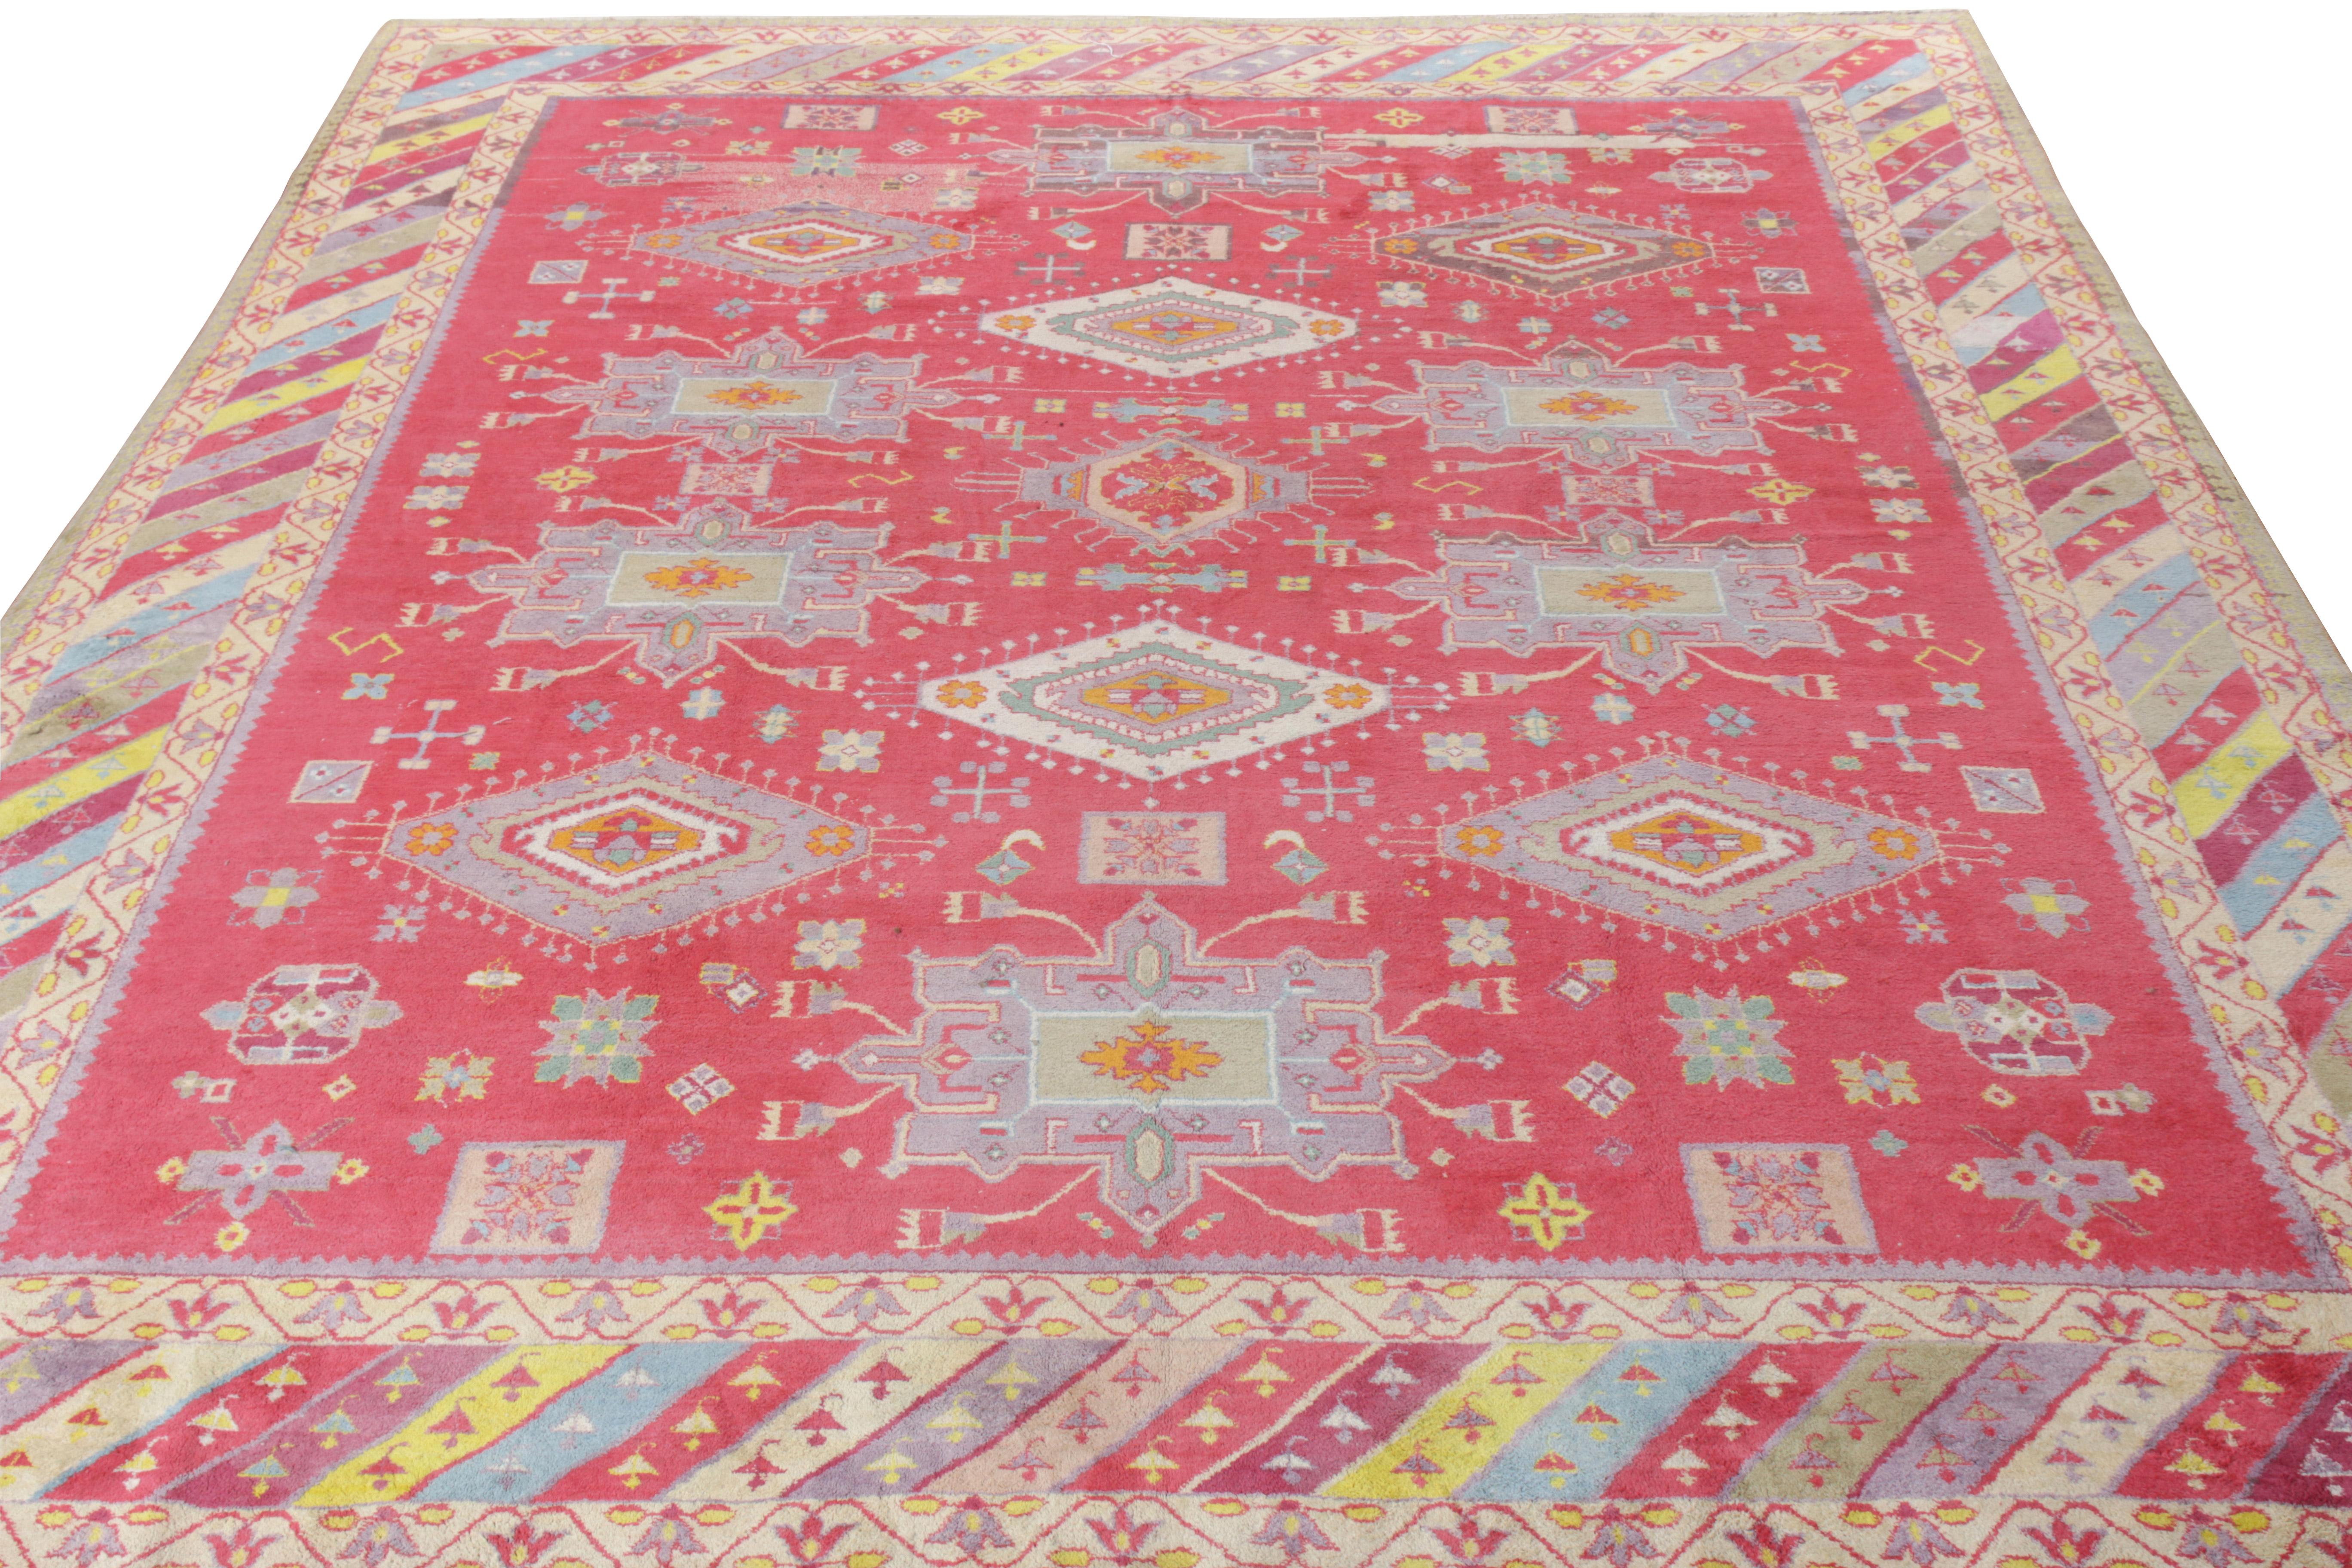 Noué à la main dans un coton doux mais durable, ce tapis Agra des années 1920, originaire d'Inde, rejoint désormais la collection Antique & Vintage de Rug & Kilim. Avec son motif géométrique et floral en médaillon, ce tapis présente une gamme de